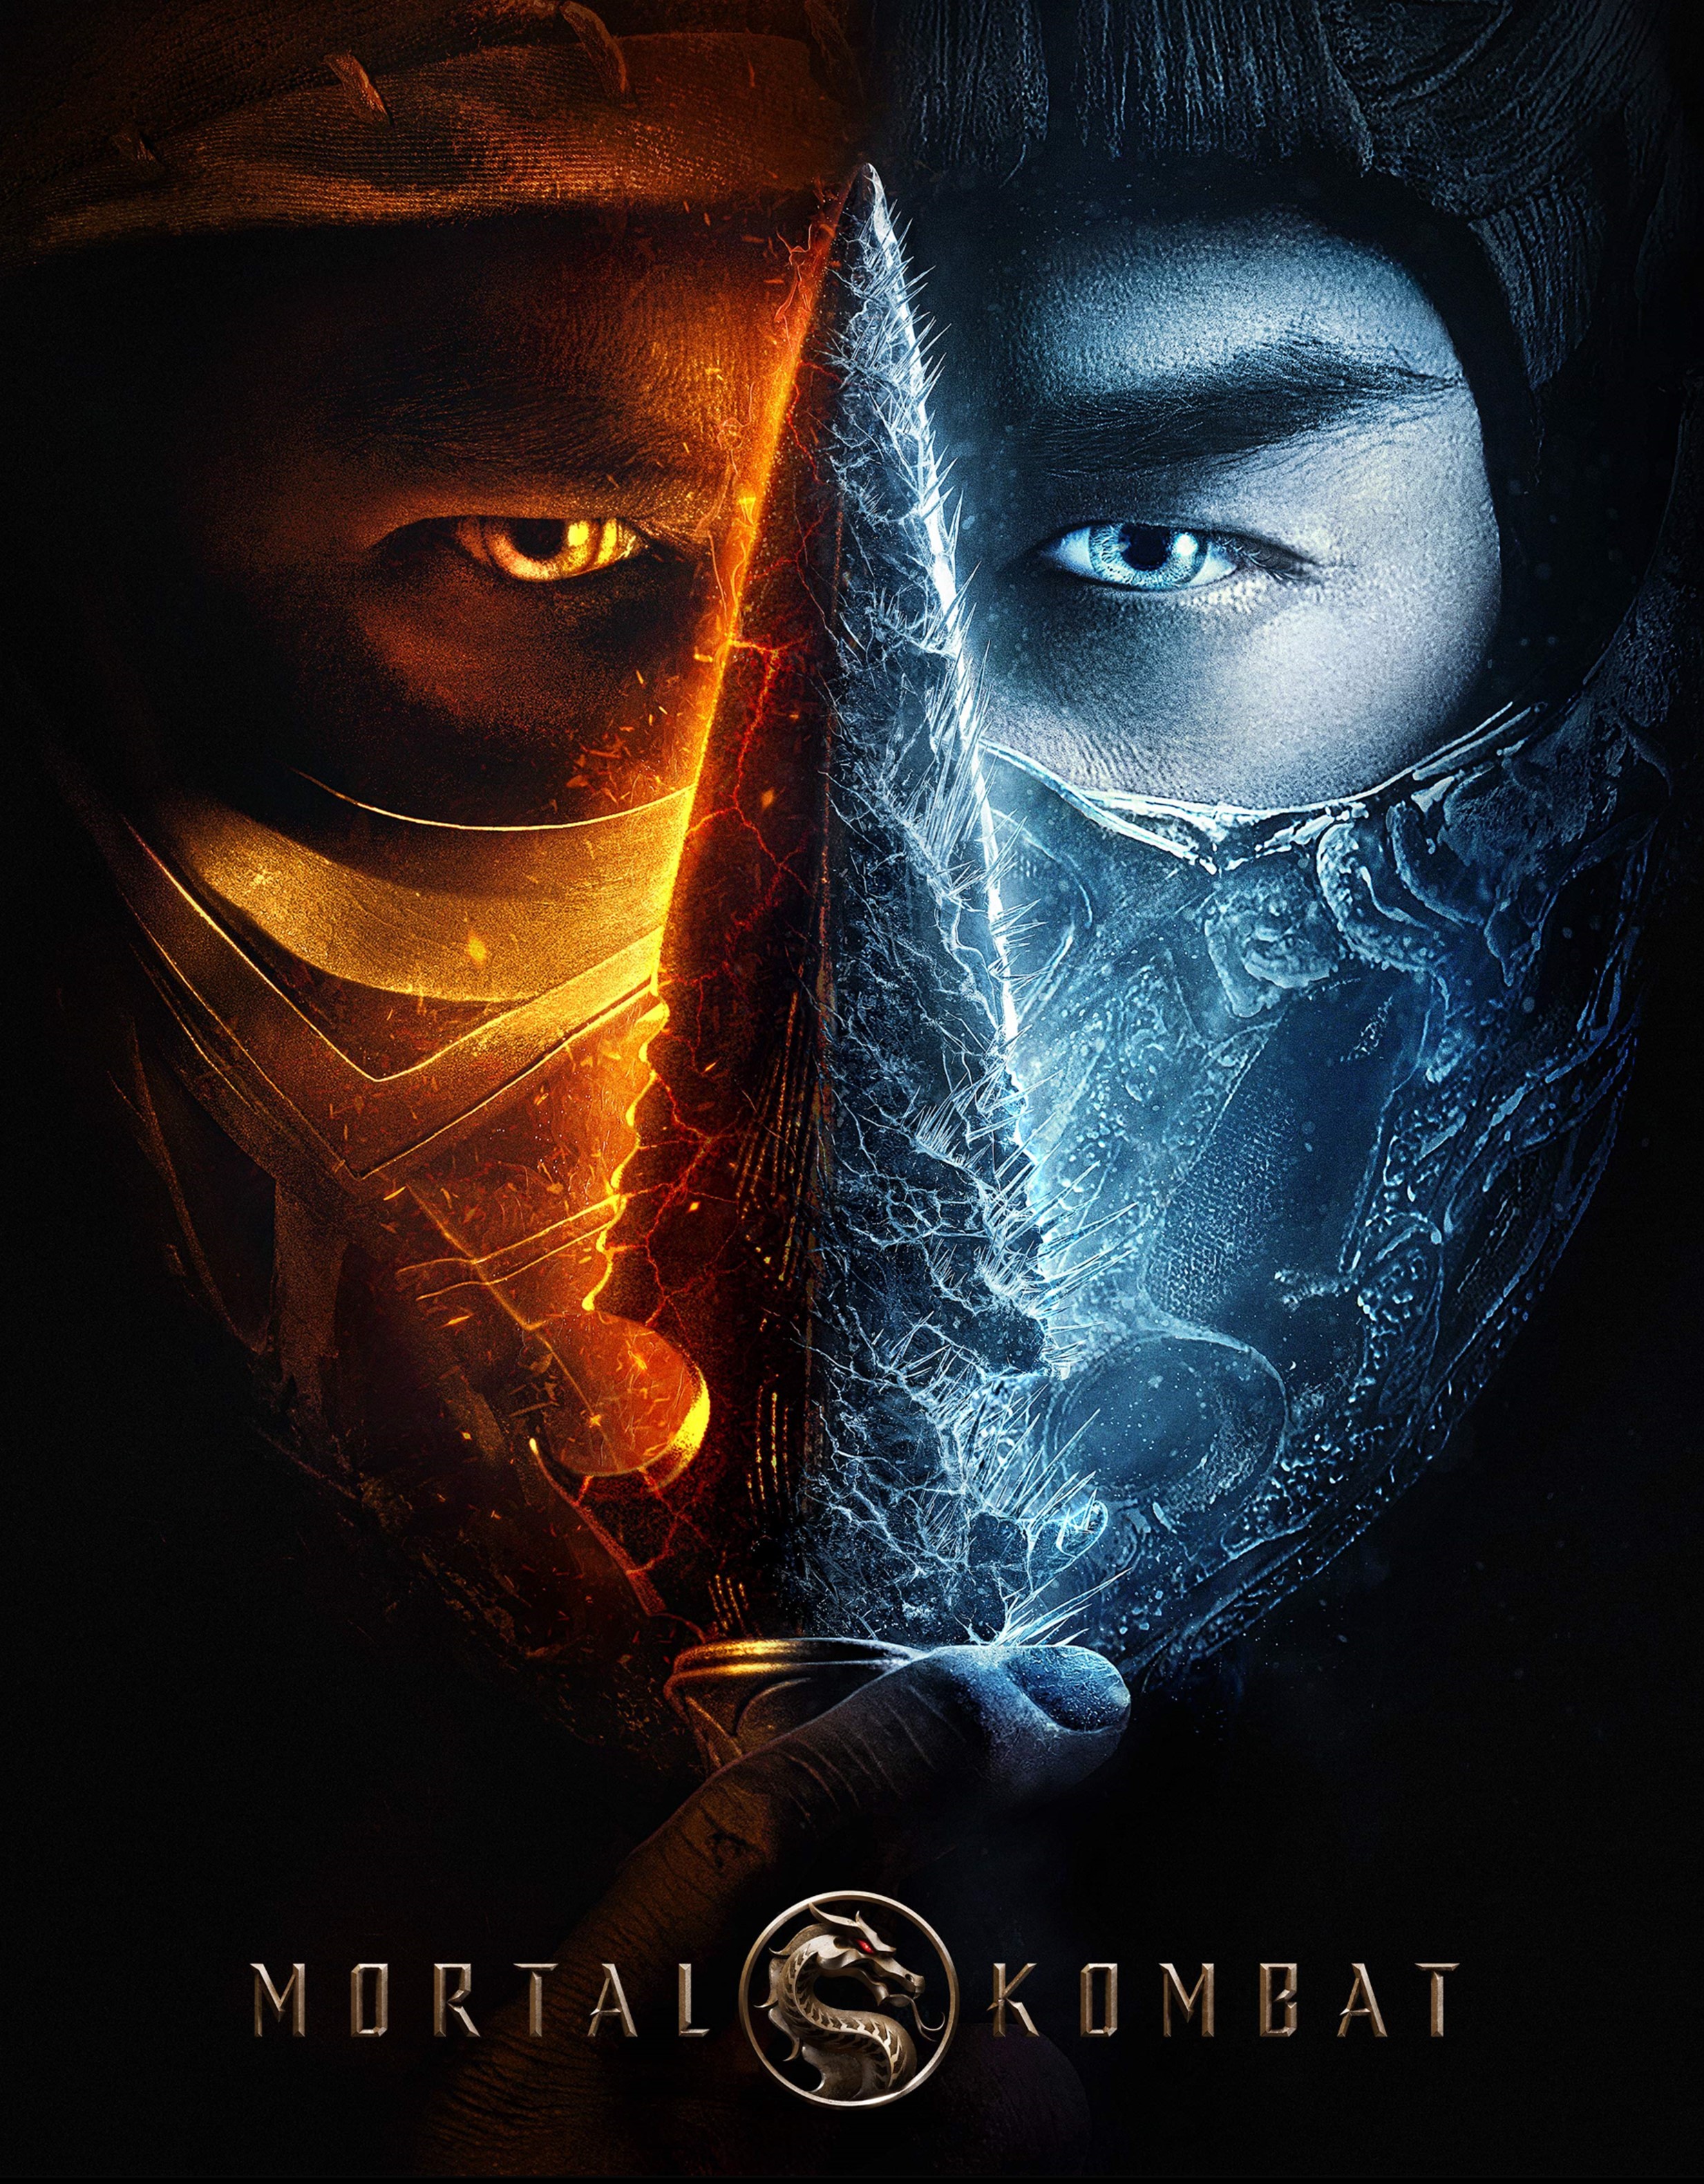 Stiahni si HD Filmy Mortal Kombat  (2021)(CZ/EN)(1080p FullHD BRRip) = CSFD 60%